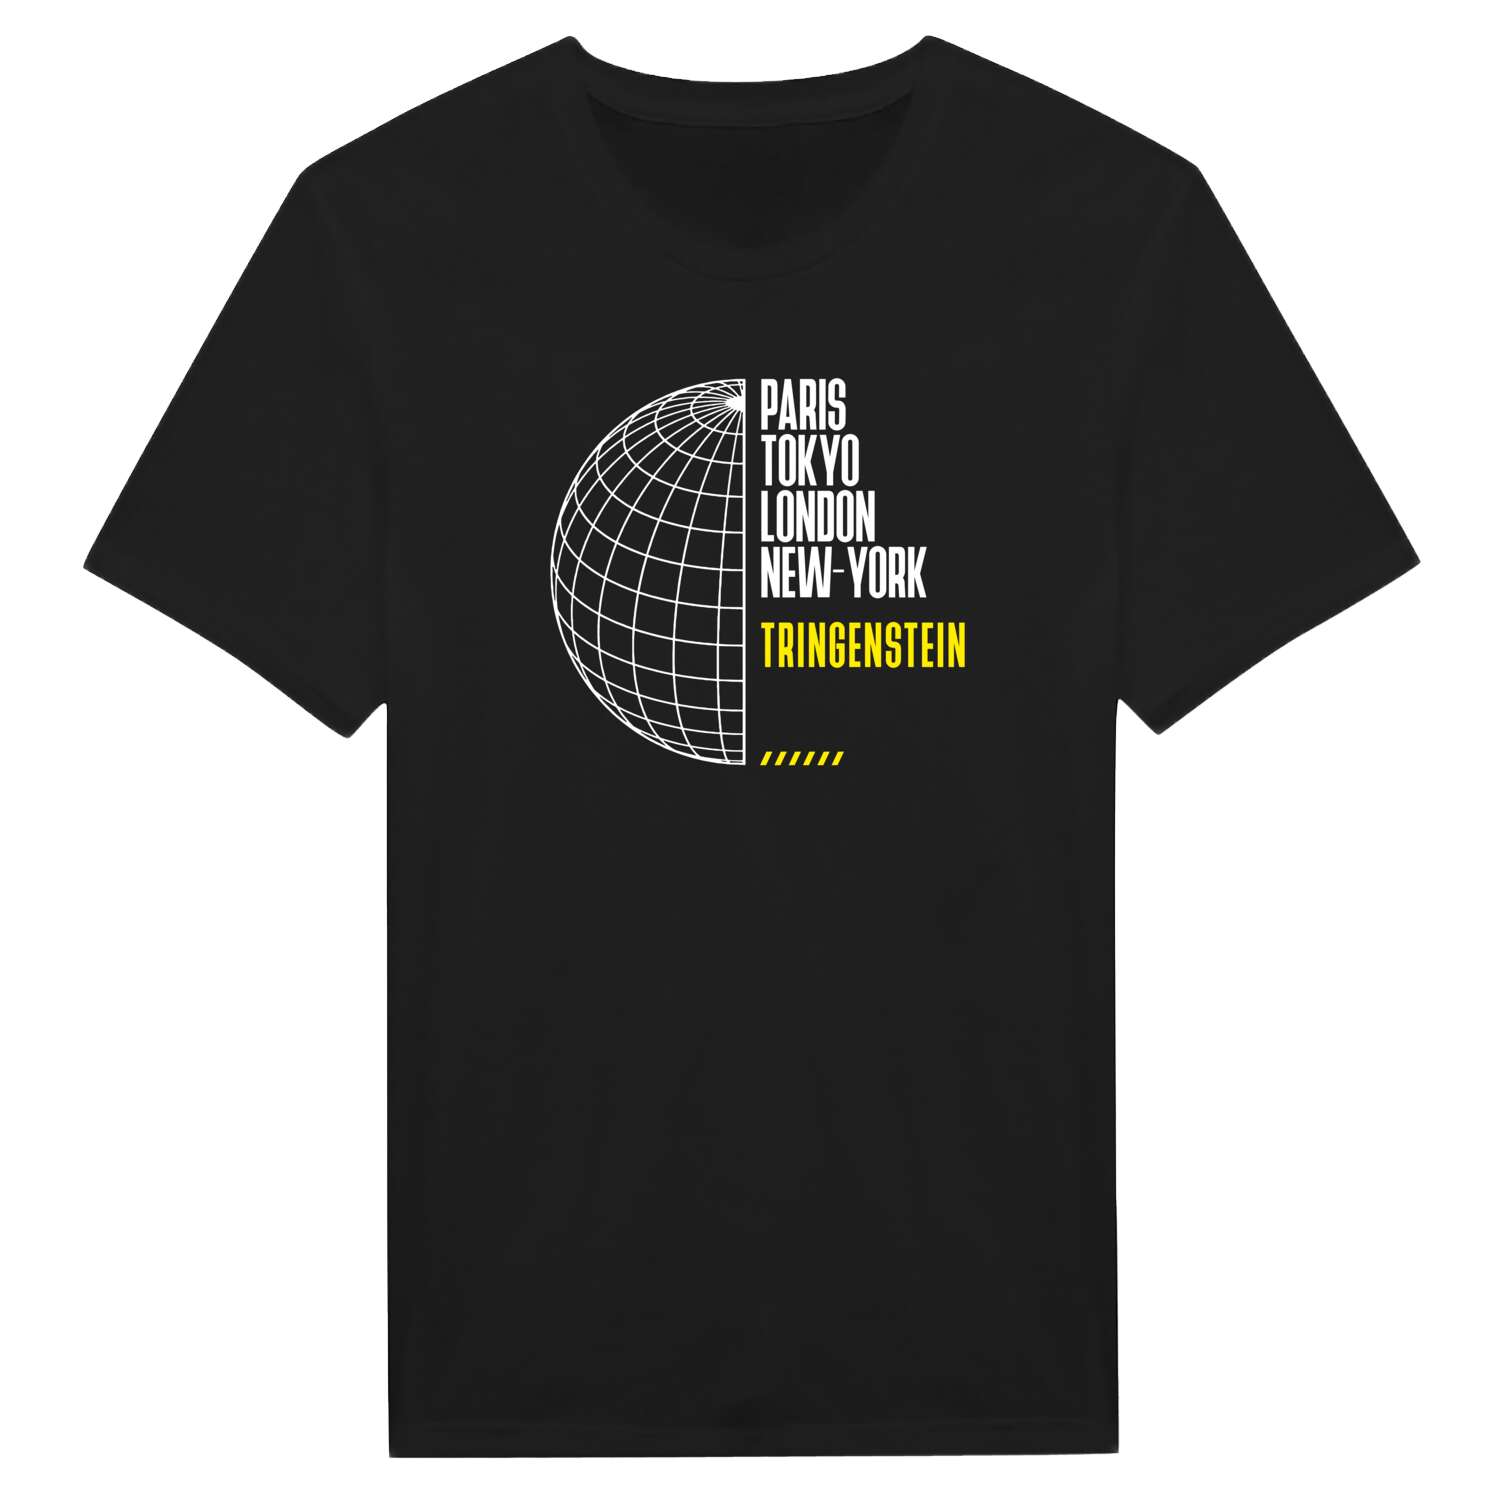 Tringenstein T-Shirt »Paris Tokyo London«